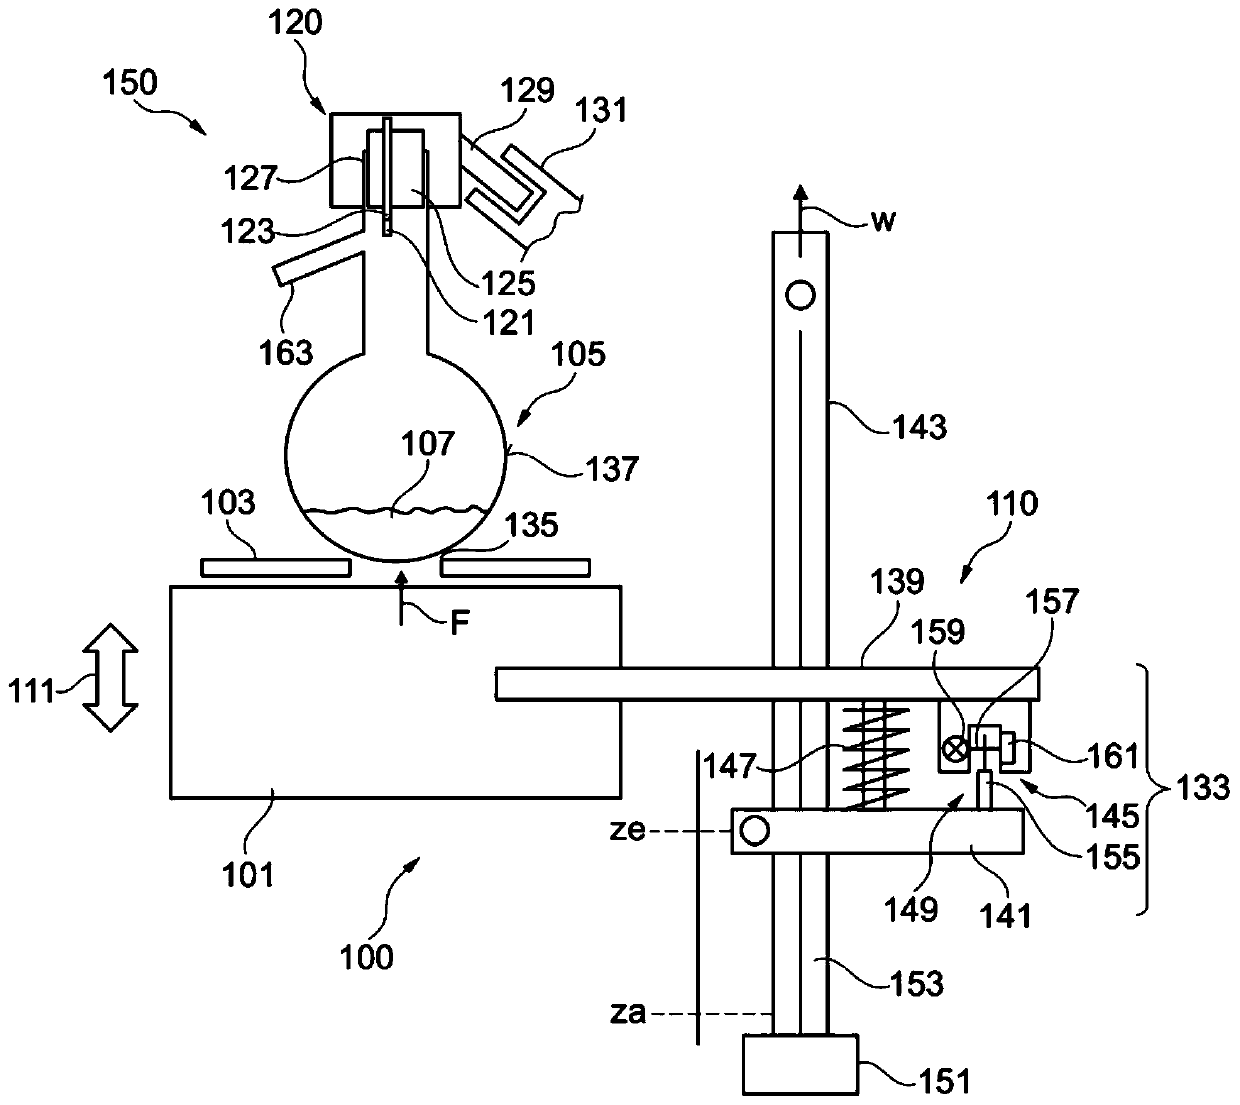 Apparatus and method for preparing distillation measurement of liquid, and liquid analysis system